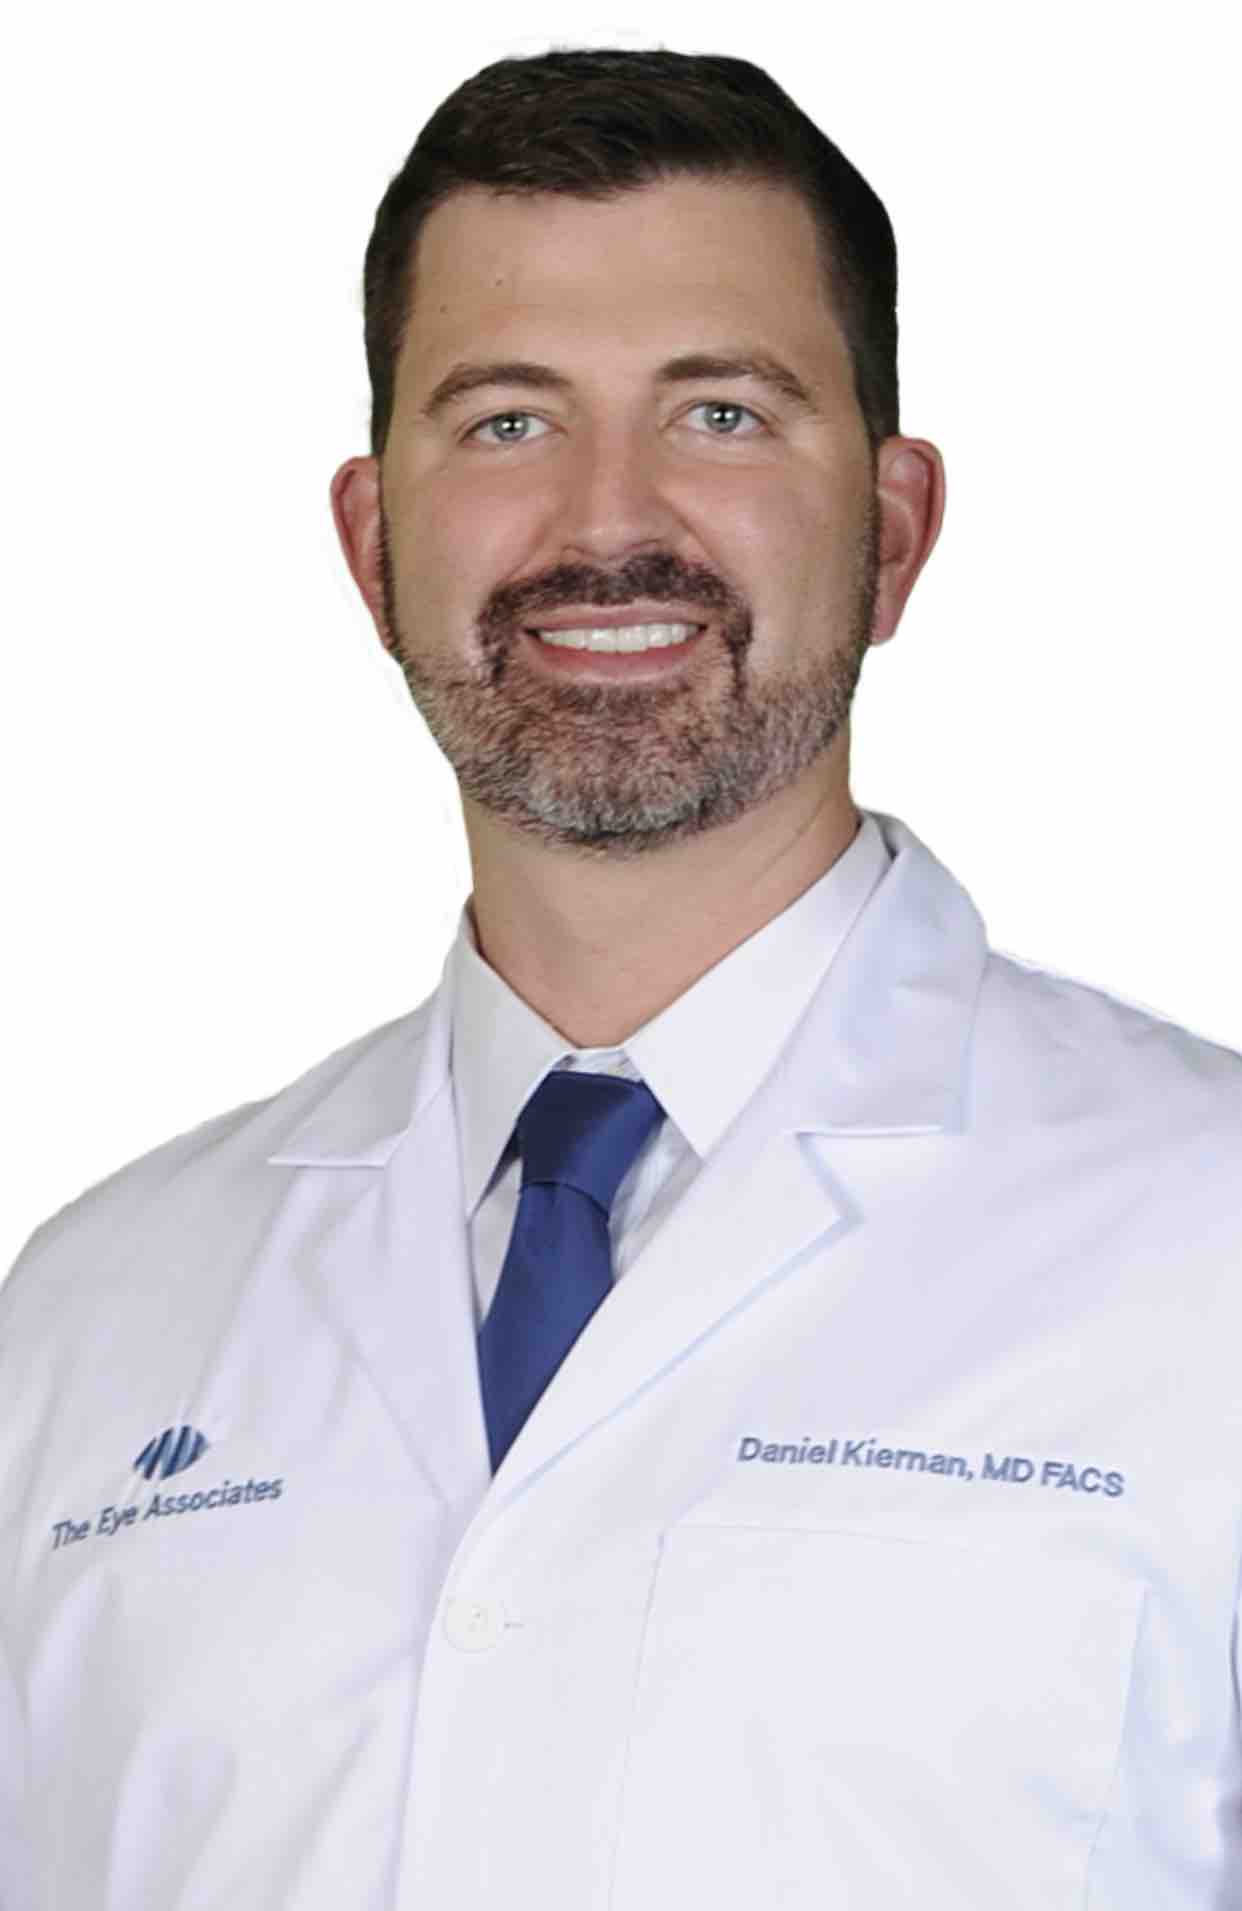 Daniel F. Kiernan, MD, FACS